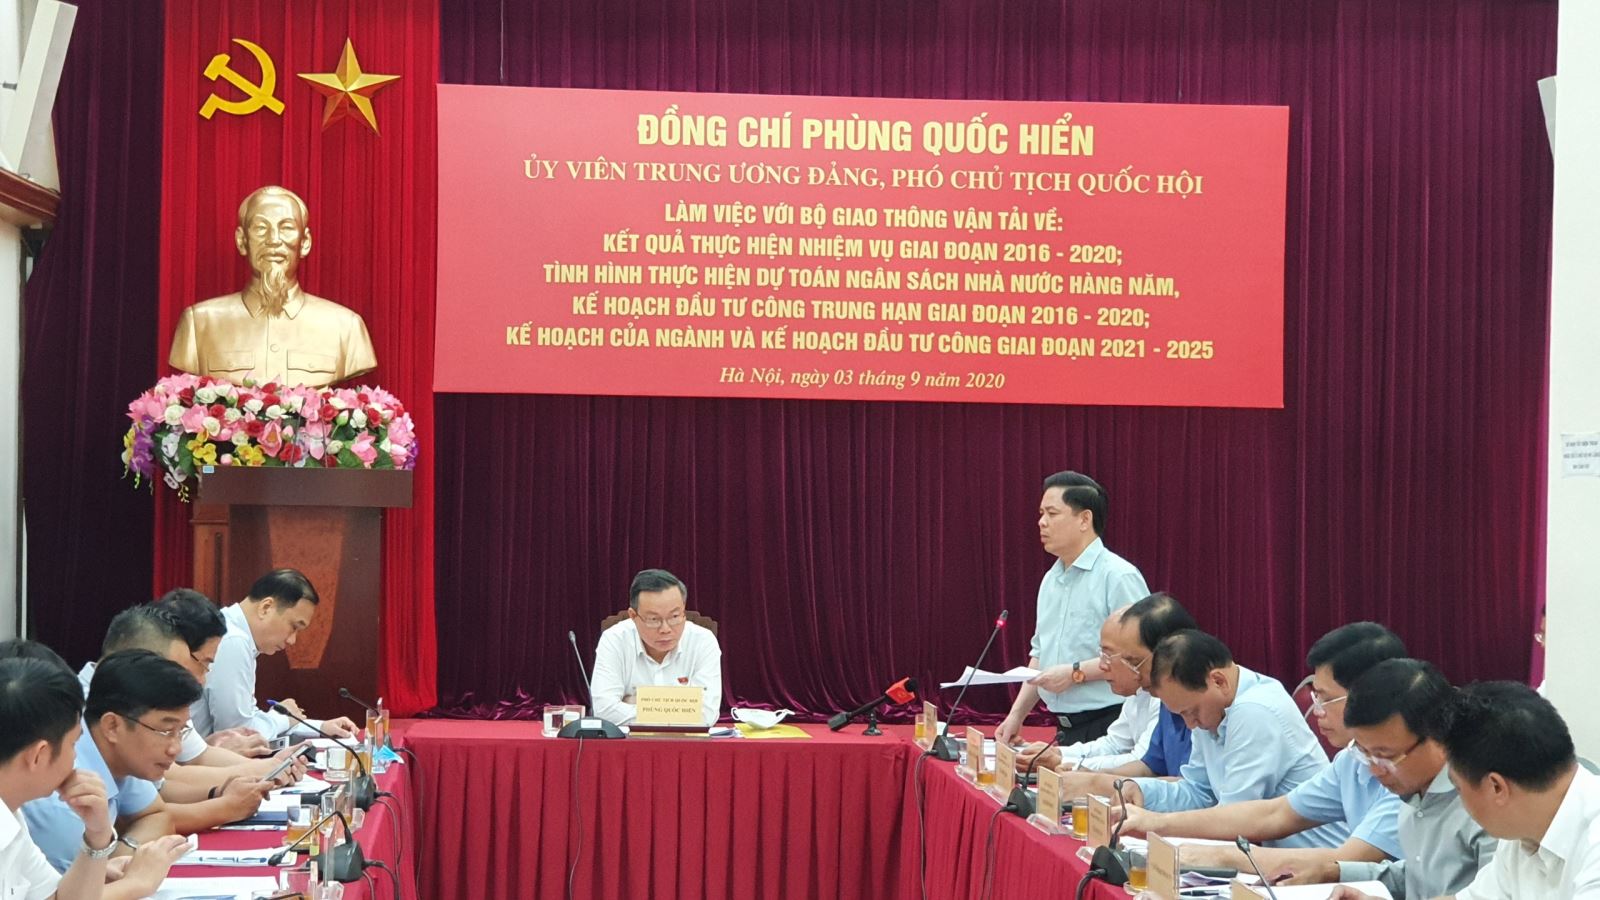 Bộ trưởng Bộ GTVT Nguyễn Văn Thể phát biểu tại buổi làm việc